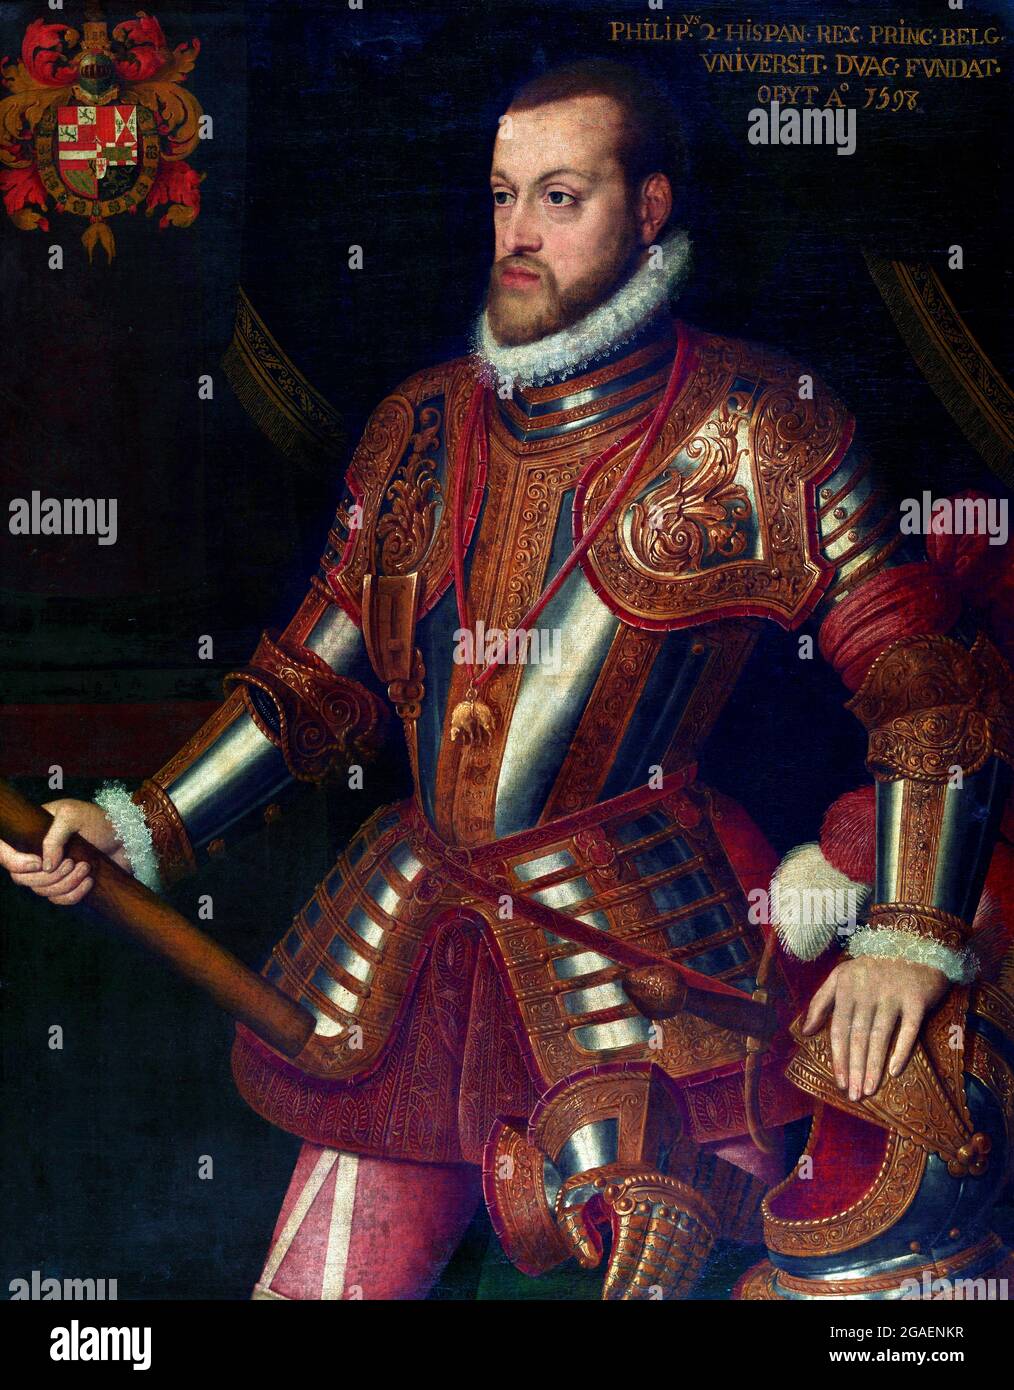 Philip II (1527-1598). Portrait du roi Philippe II d'Espagne, anonyme, huile sur toile, c. 1550-75 Banque D'Images